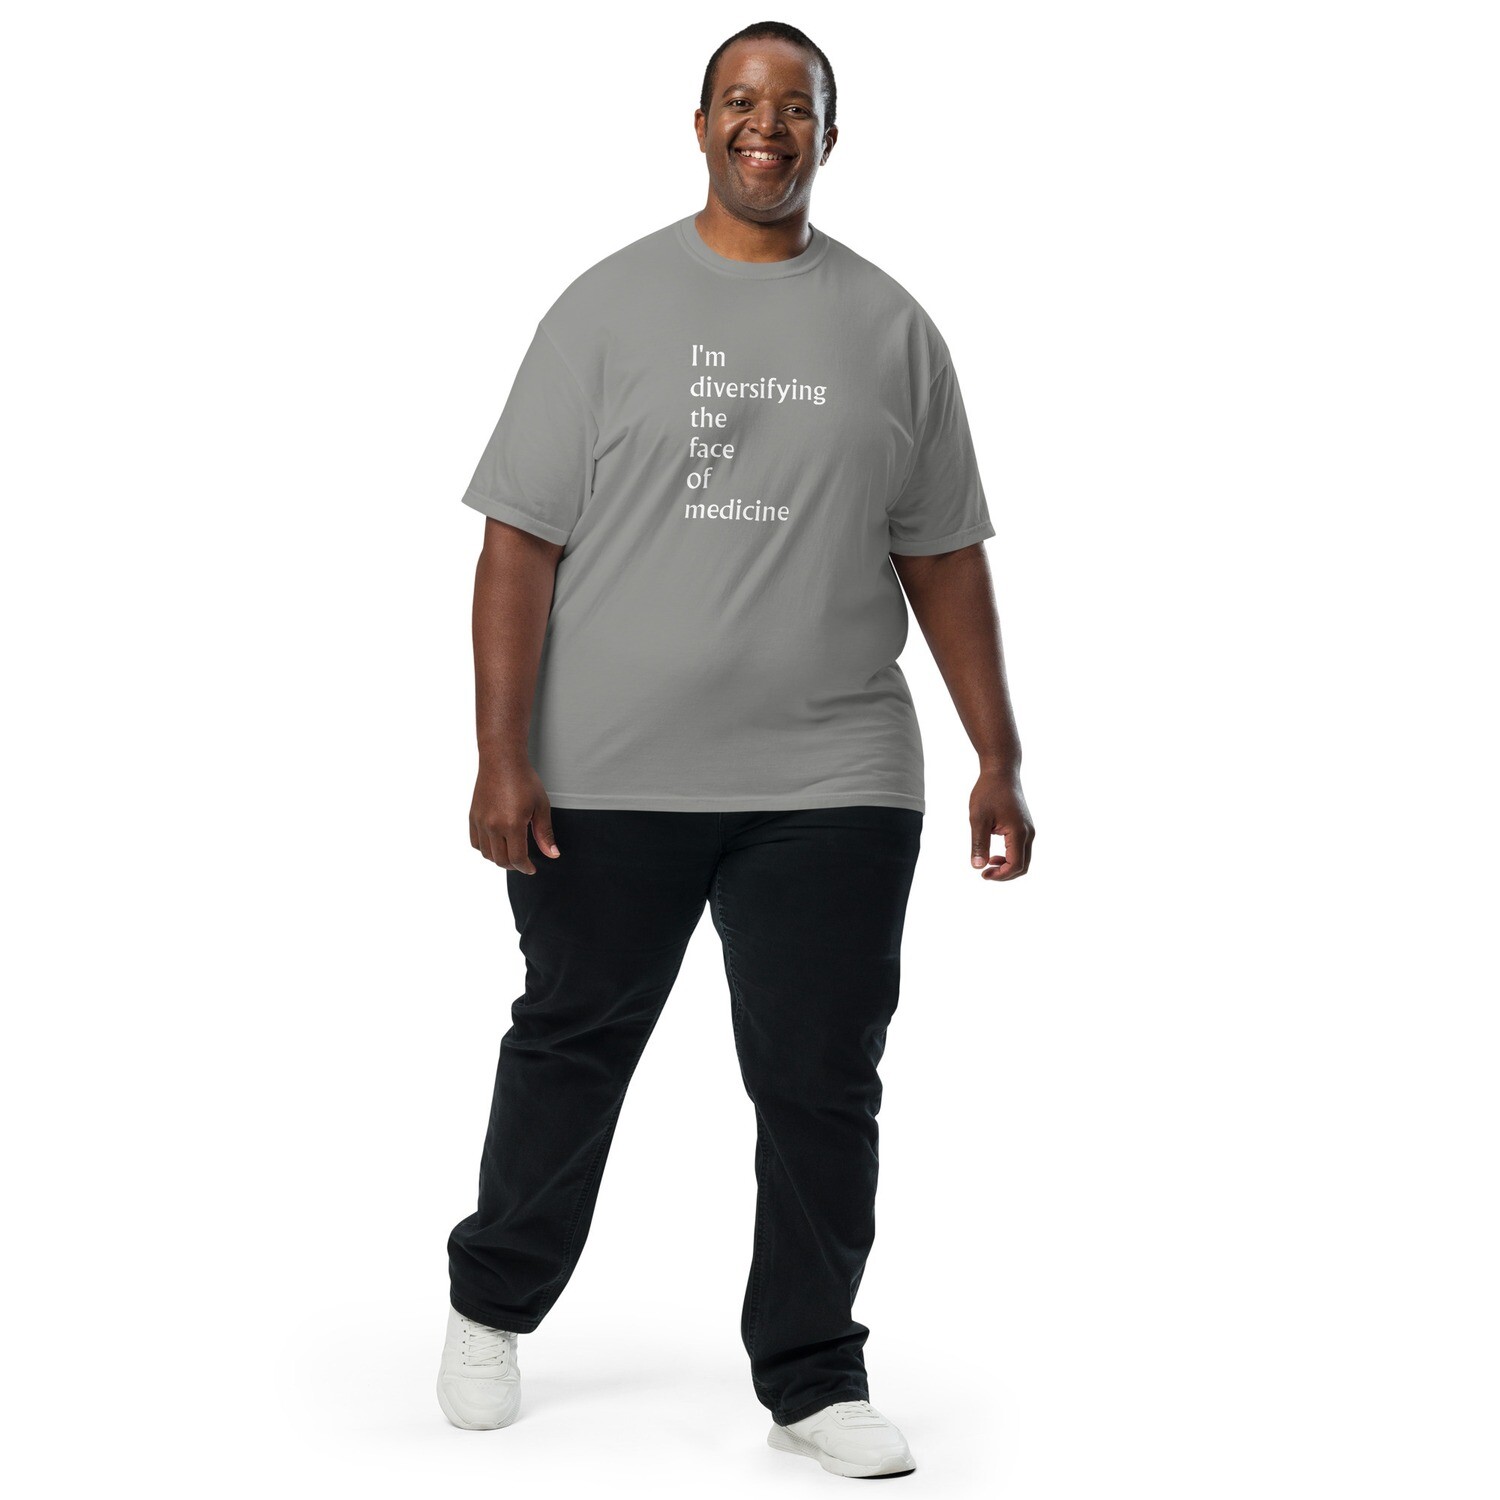 Garment-dyed Heavyweight T-shirt